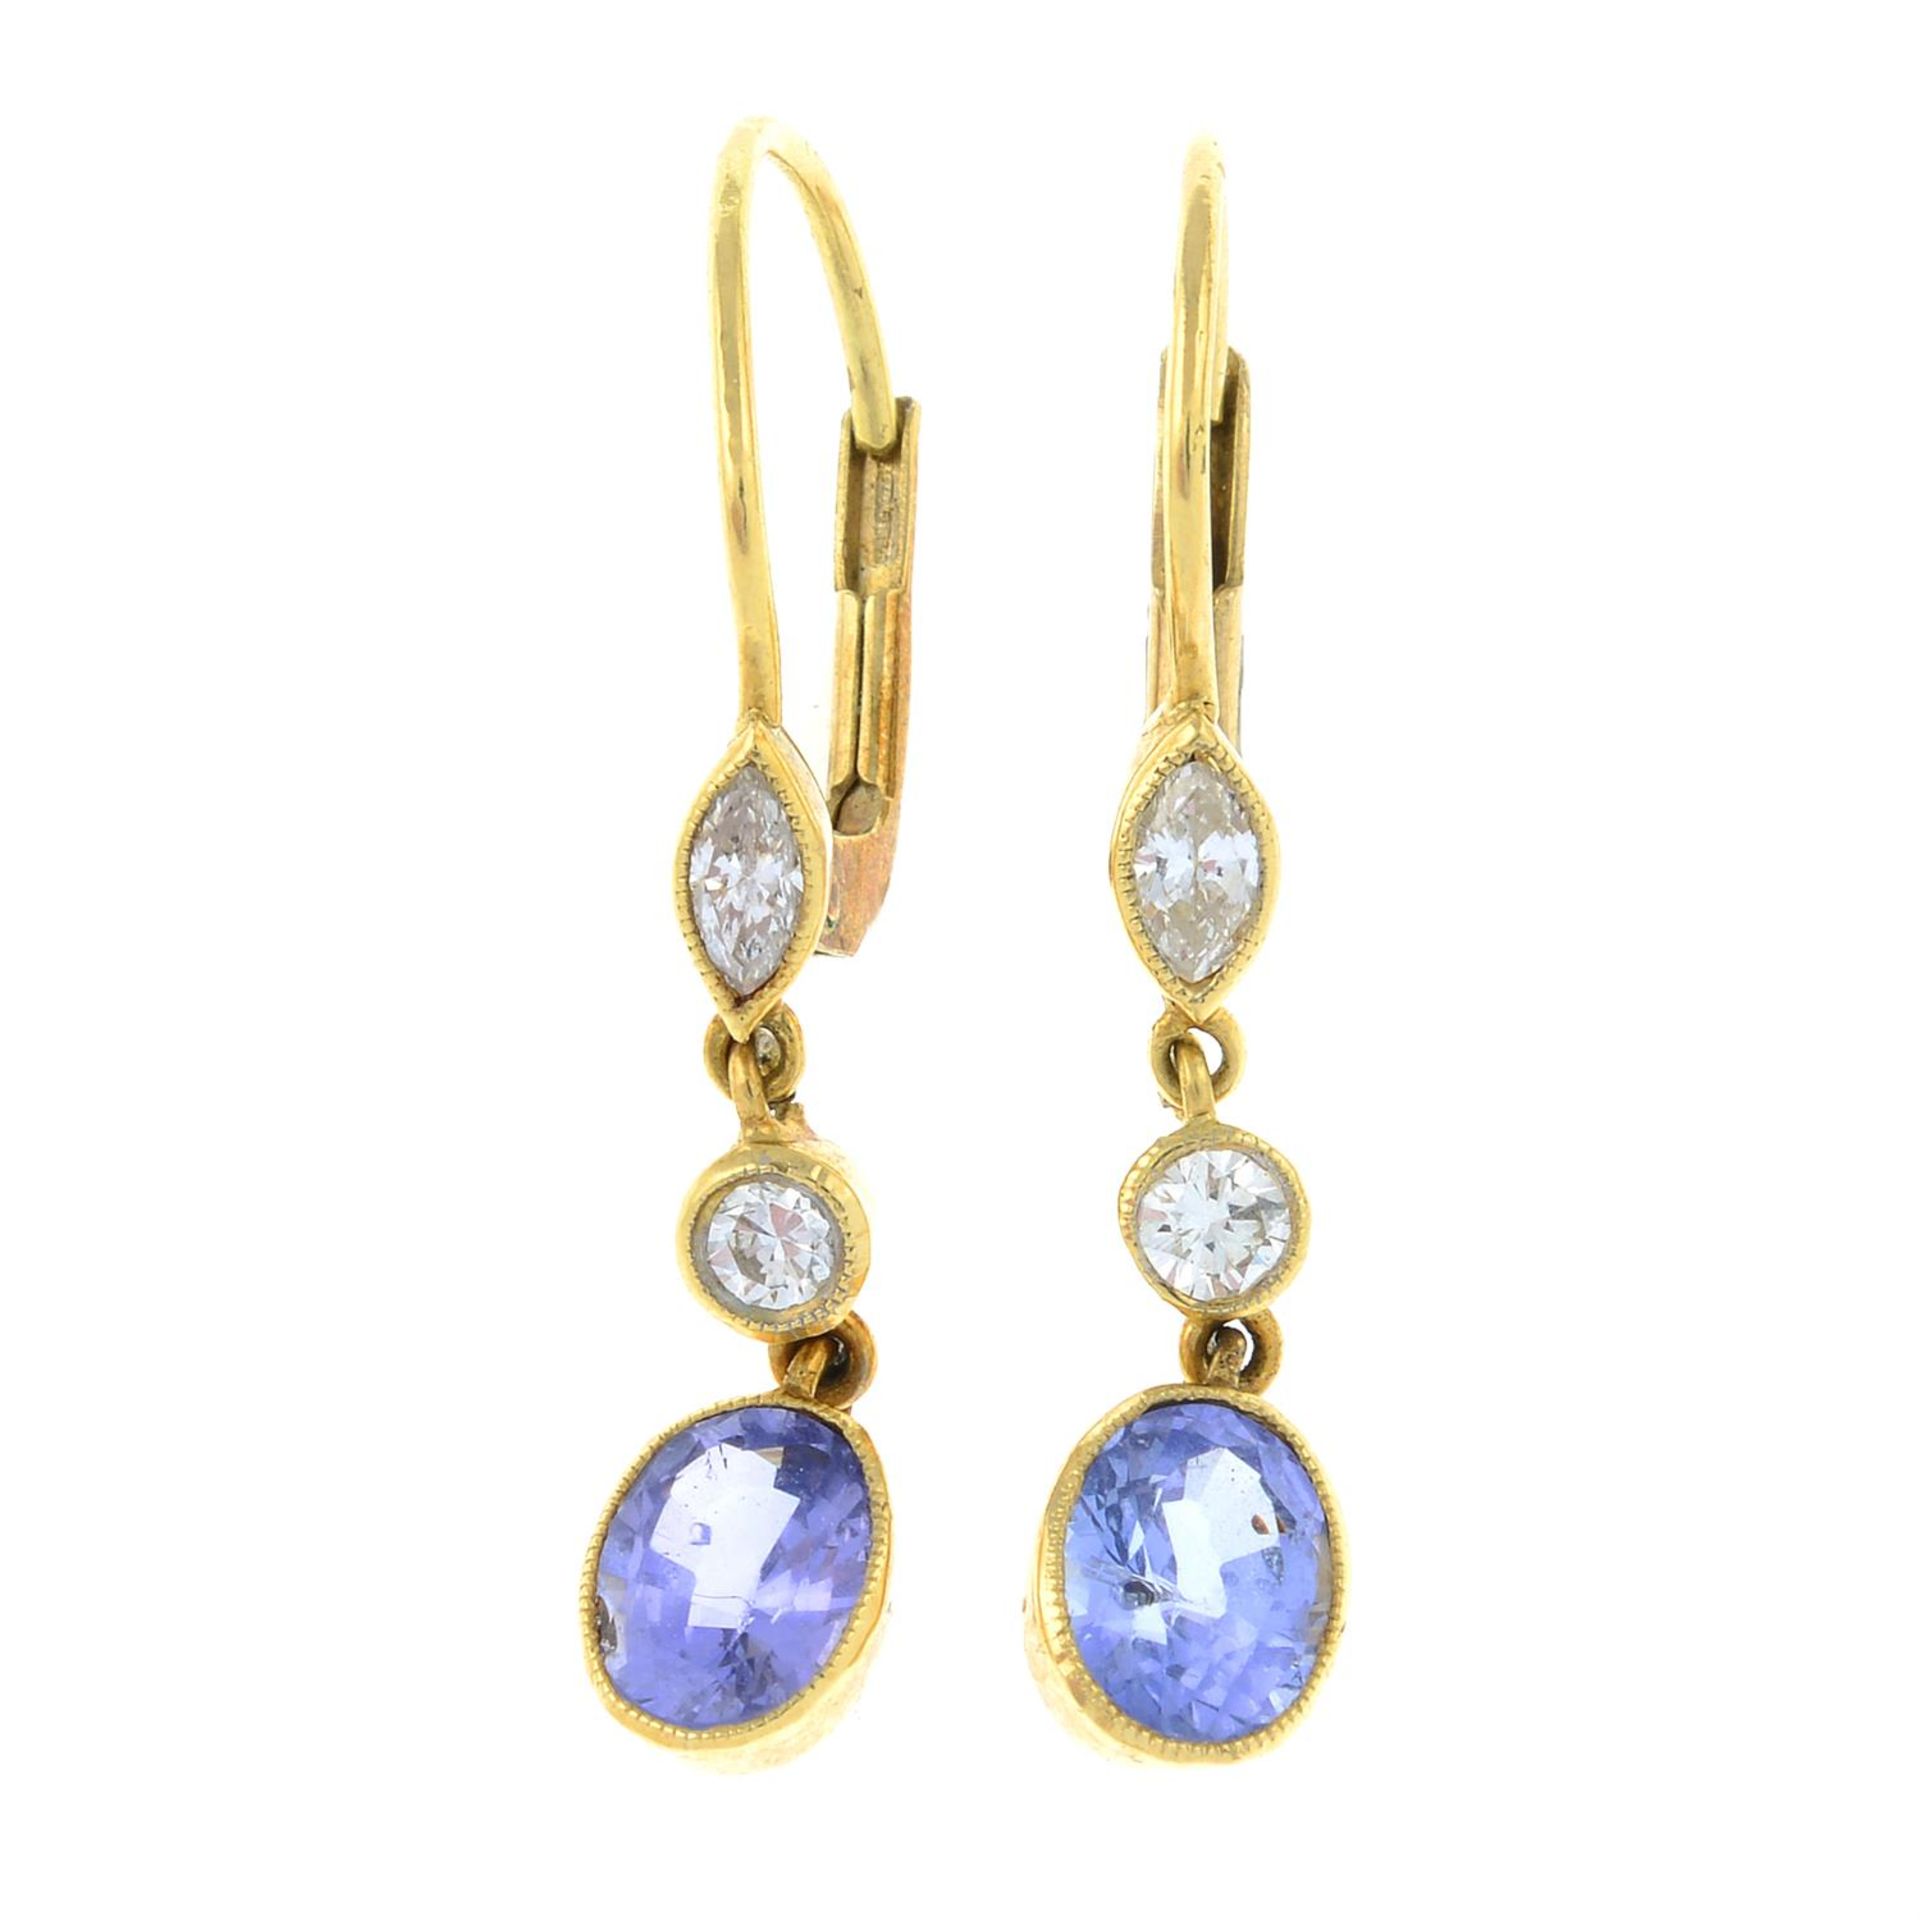 A pair of vari-cut diamond and sapphire drop earrings.